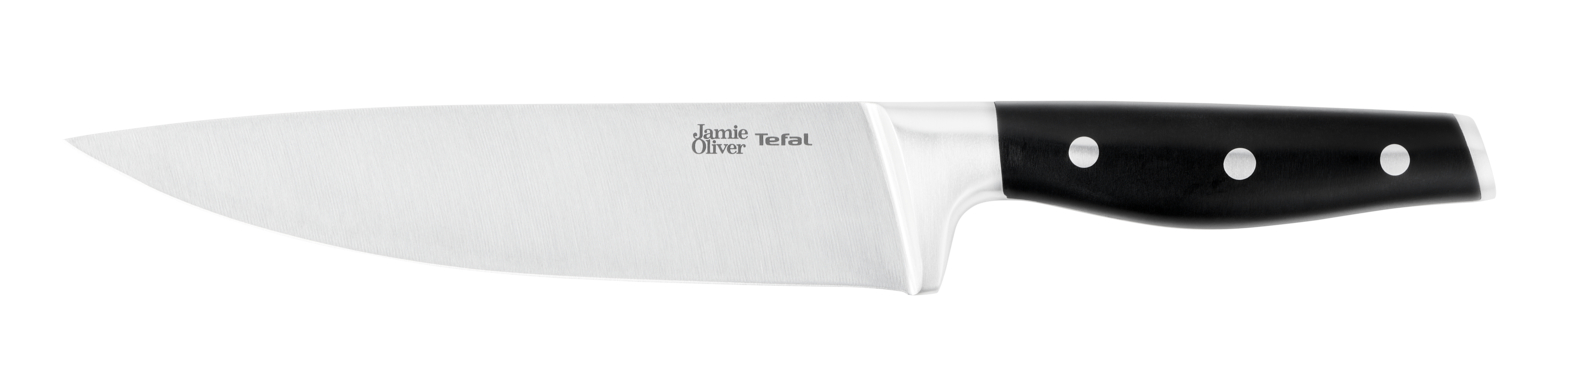 Шеф-нож Jamie Oliver 20 см K2670144 шеф нож jamie oliver 20 см k2670144